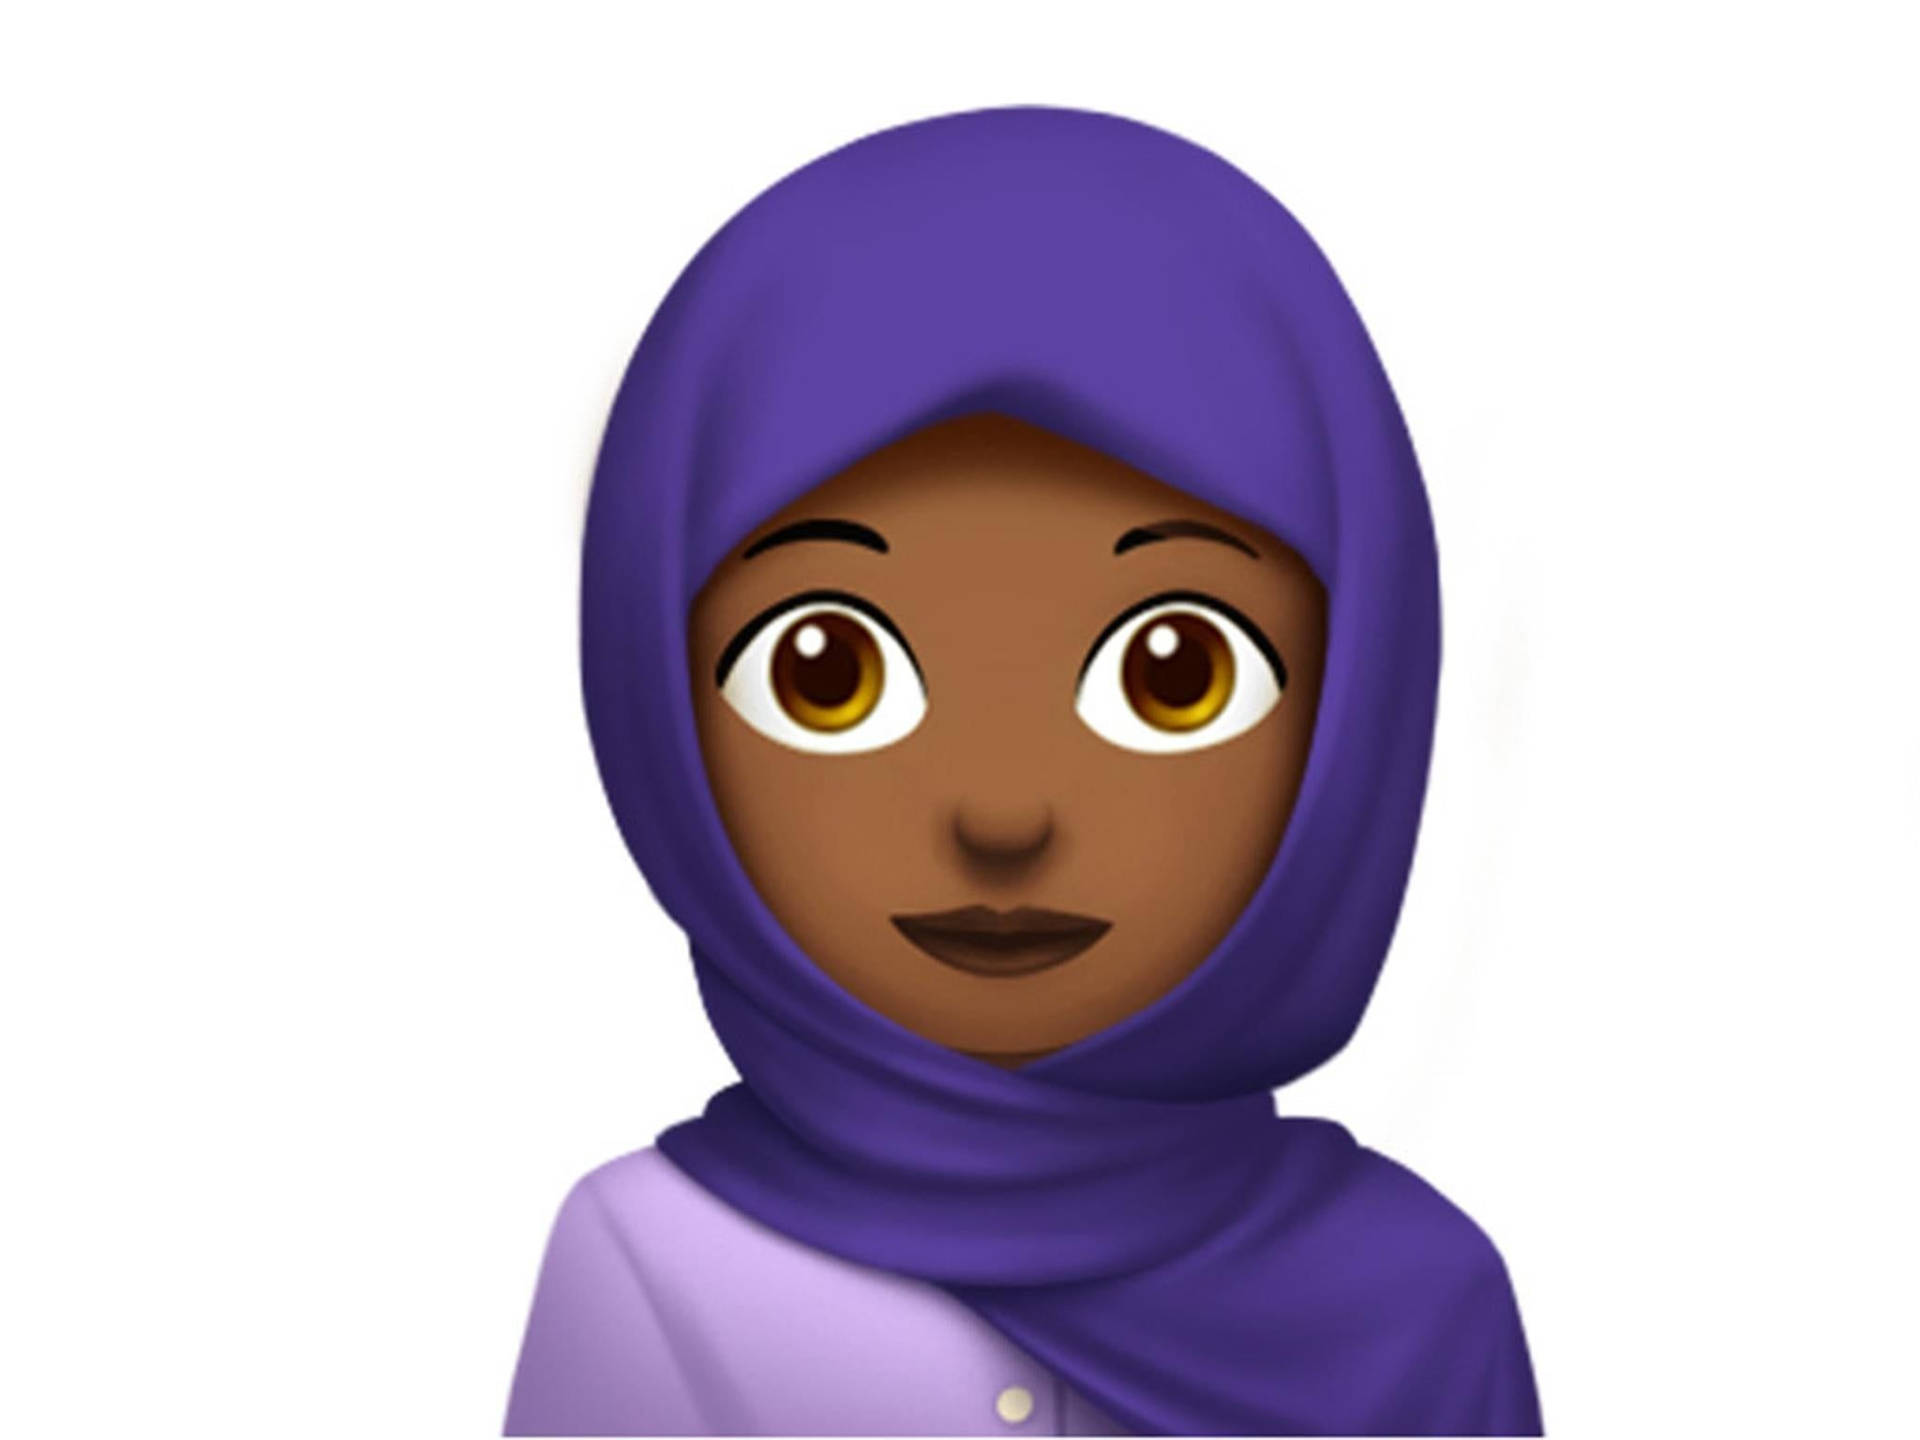 Tapetför Dator Eller Mobil - 3d-animering Av En Hijab I Karikatyrformat. Wallpaper